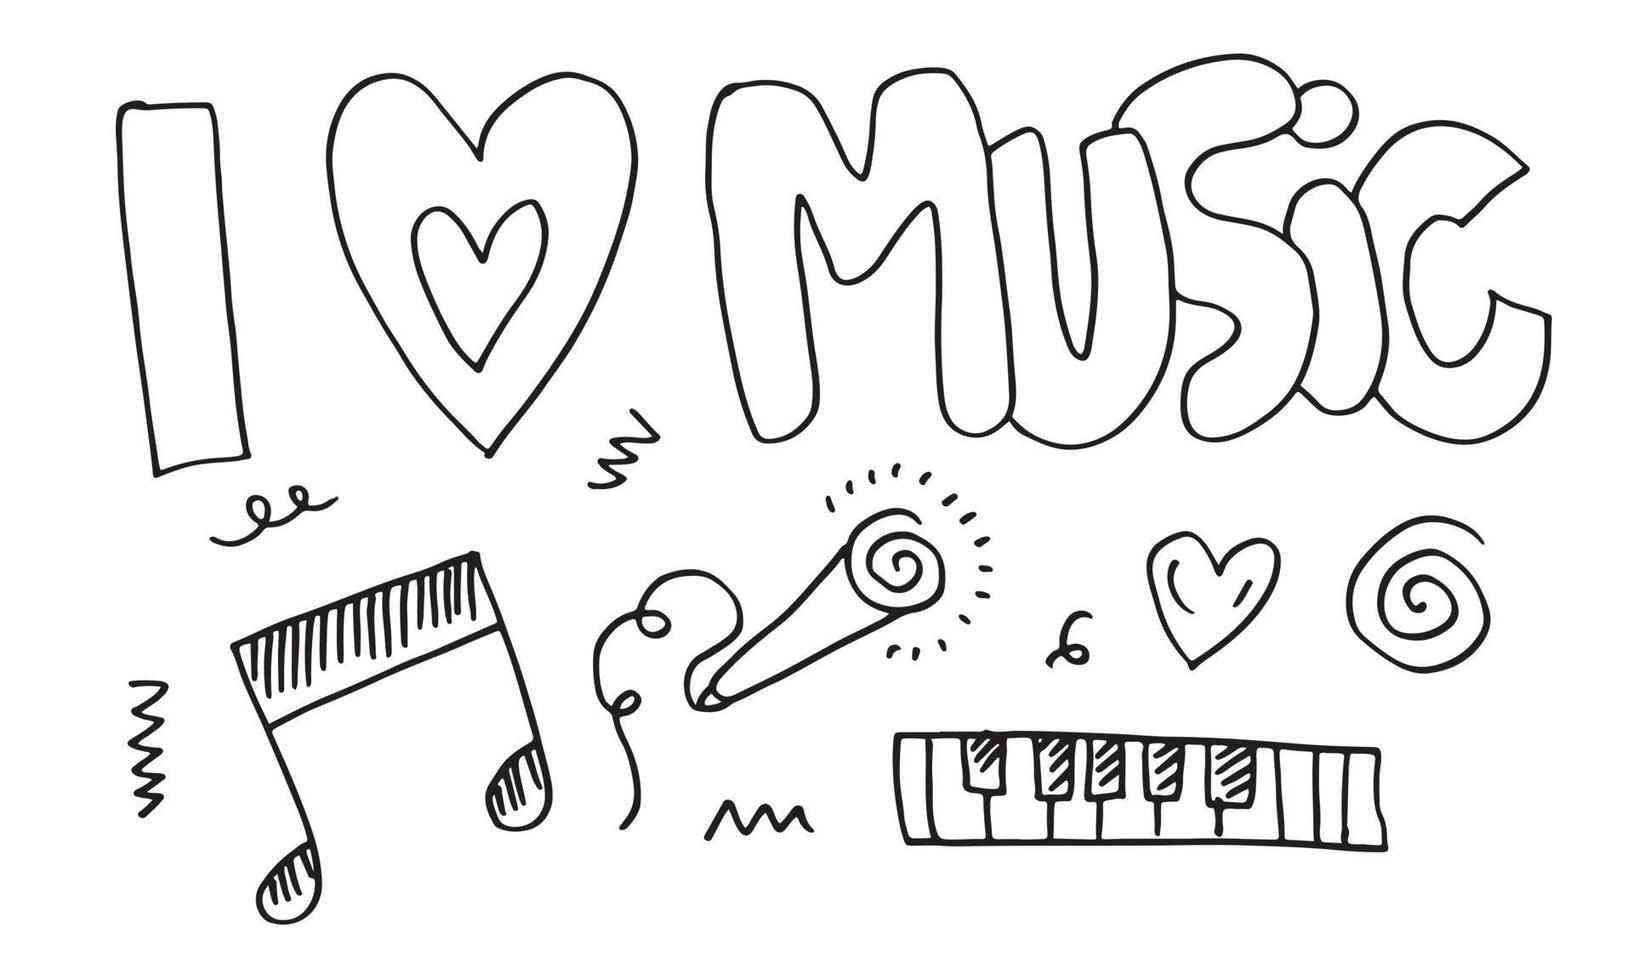 eu amo música com notas musicais, coração, microfone e redemoinhos em fundo branco. vetor